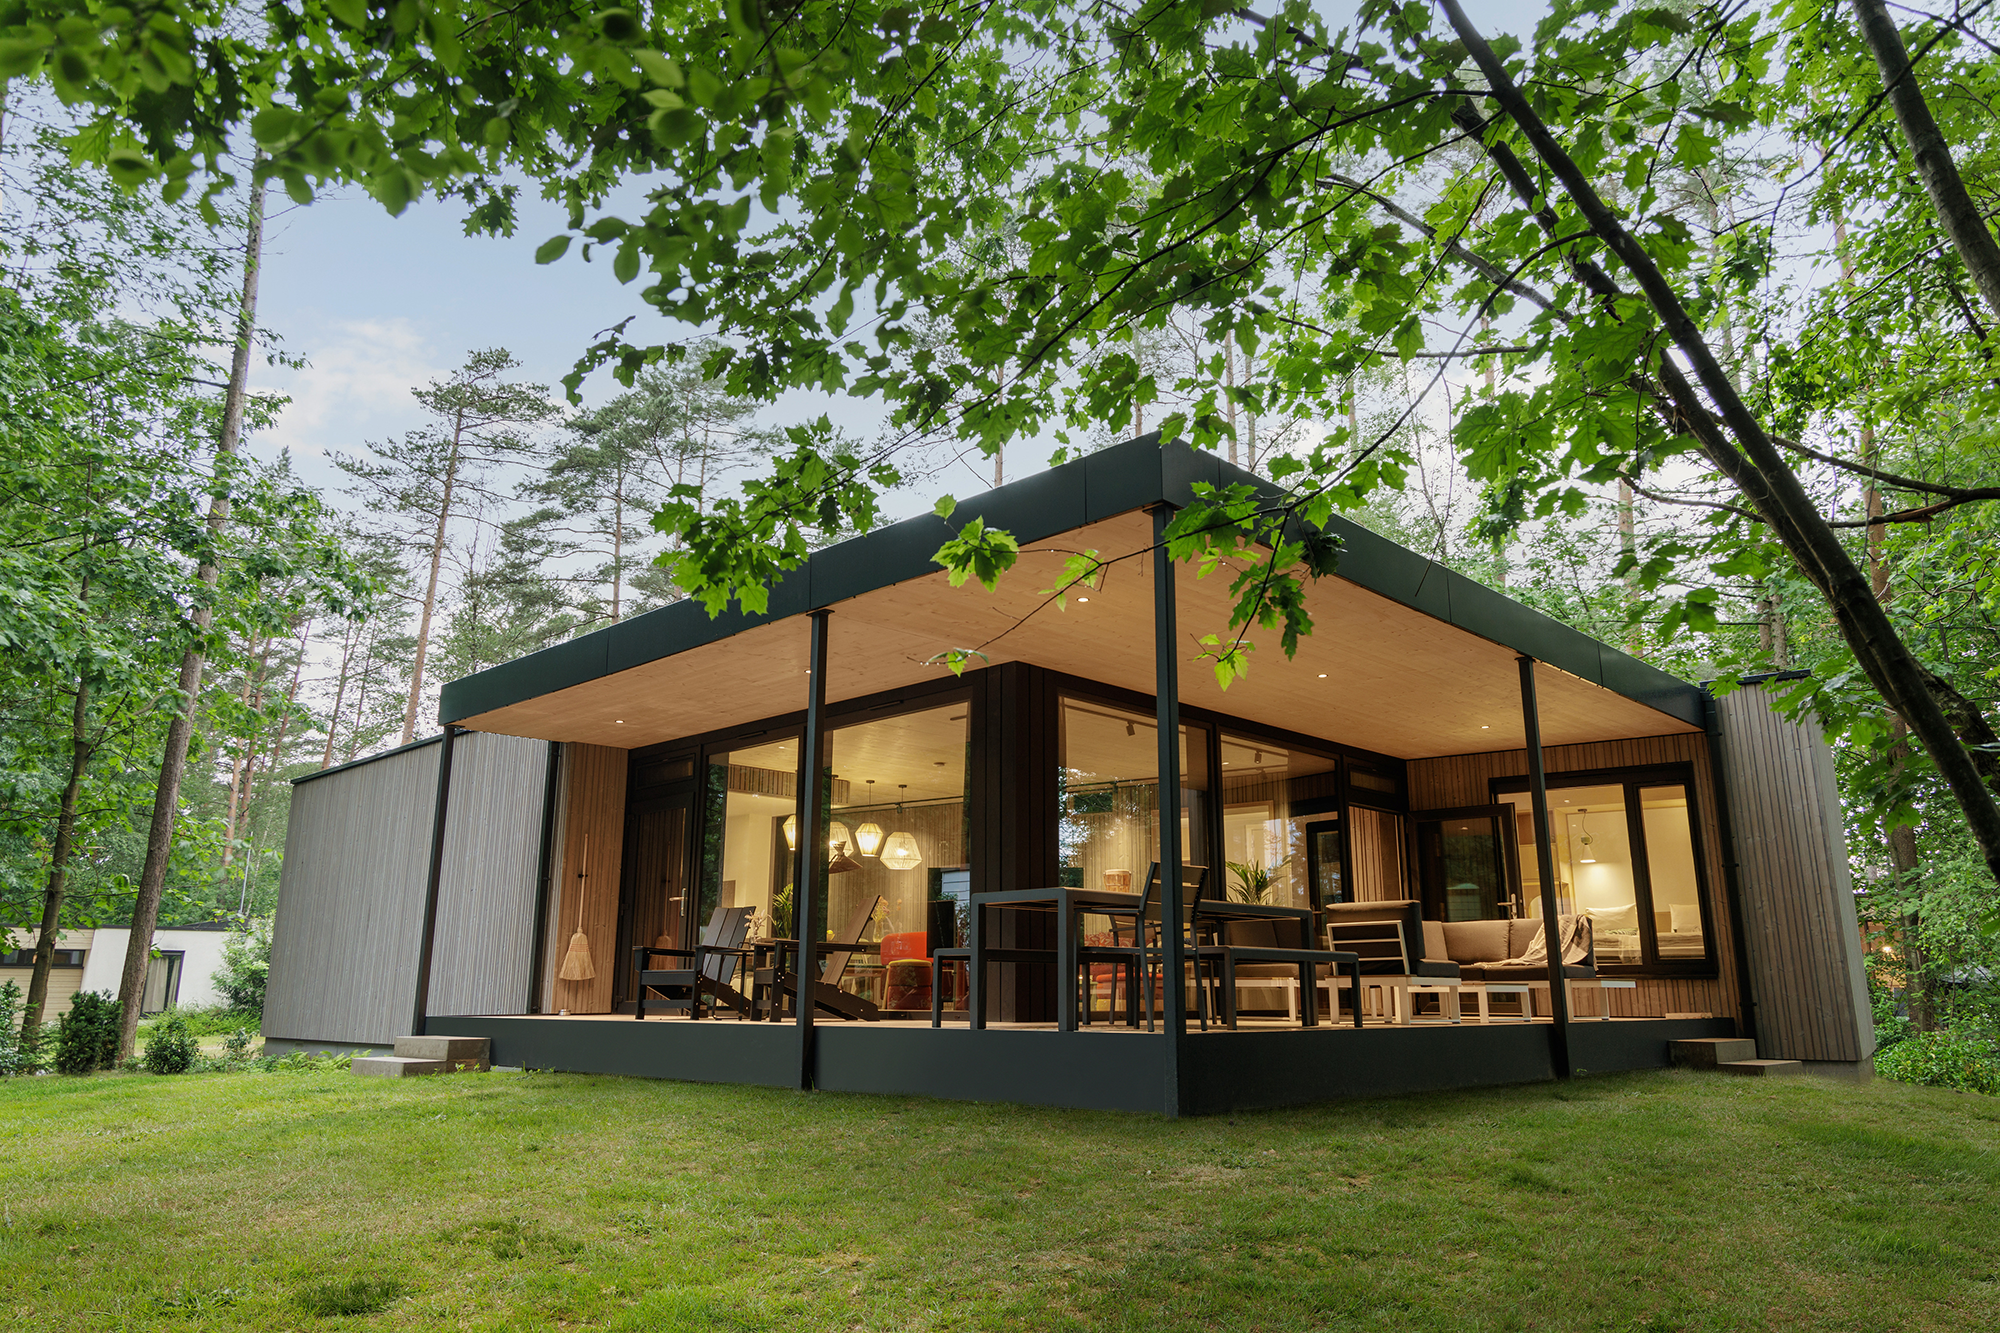 Una cabaña modular con una arquitectura simple y sostenible